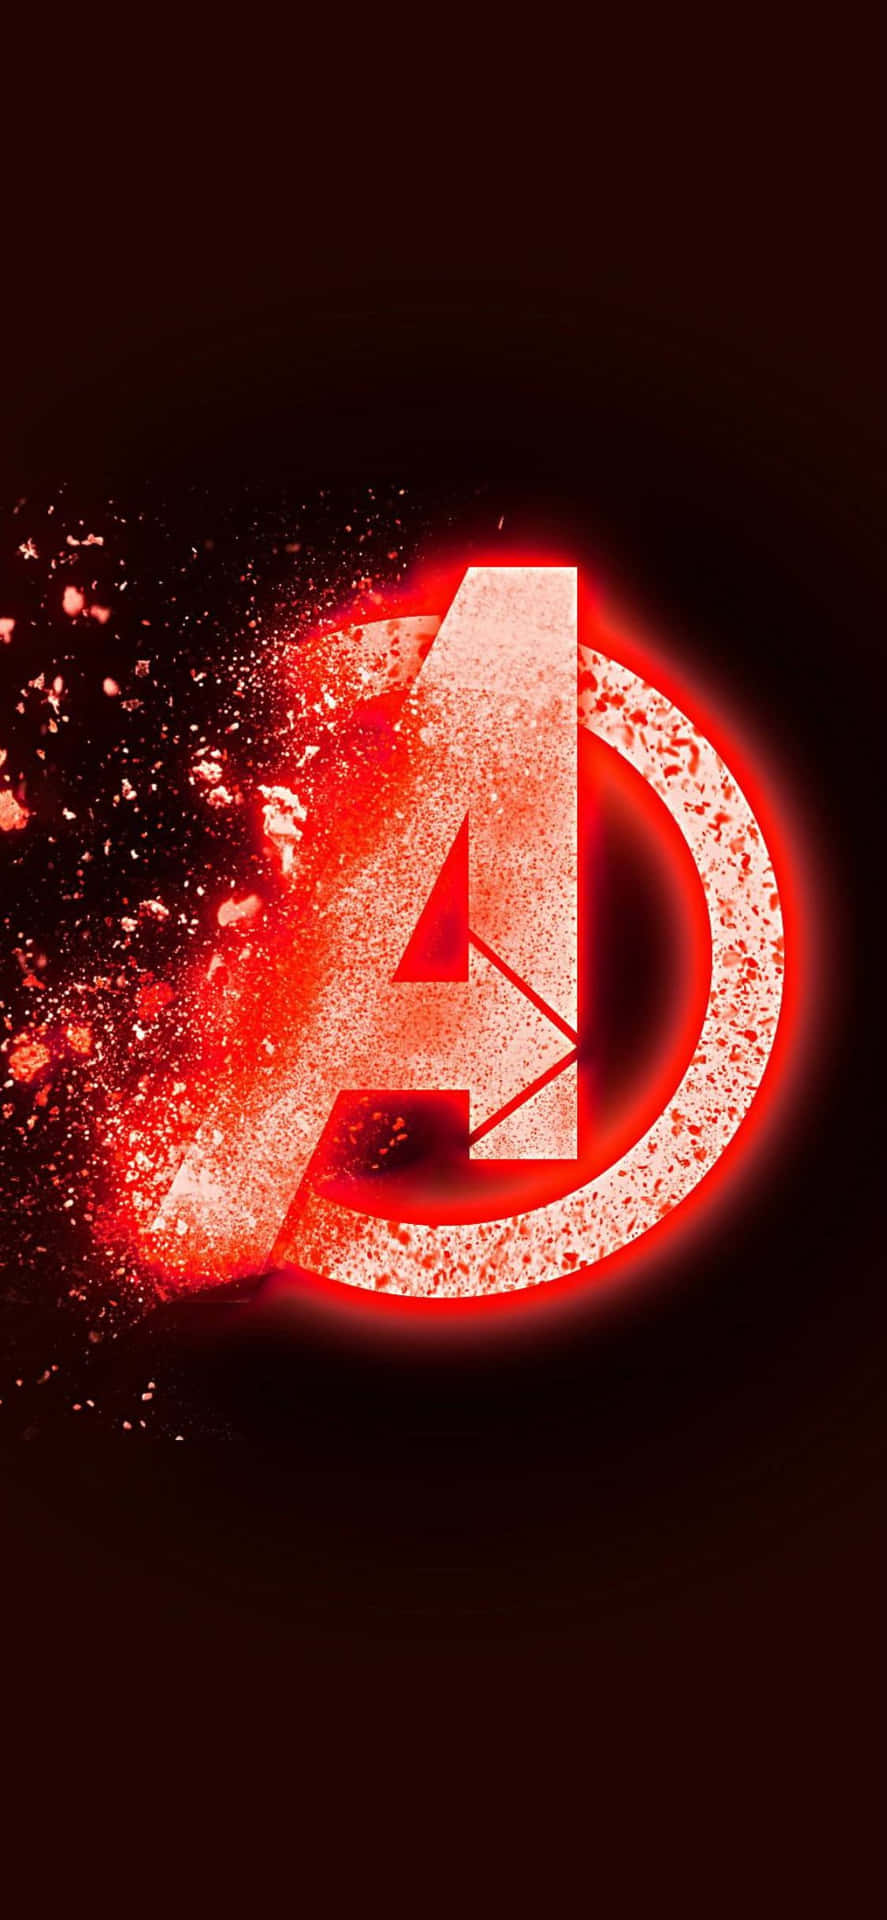 iPhone XS Blipping Avengers Logo Background